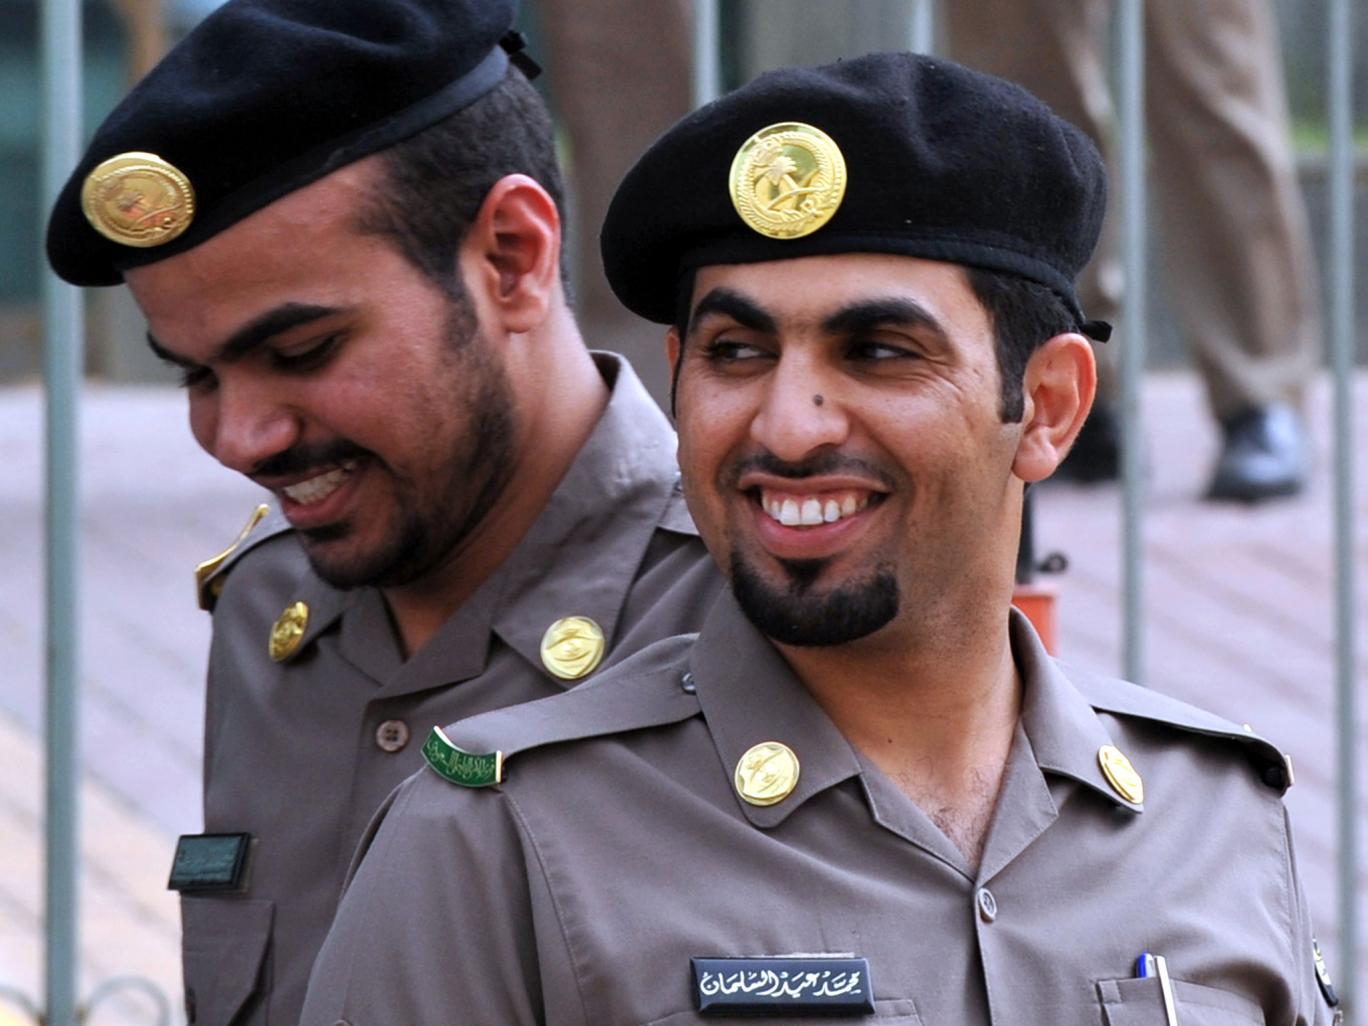 Saudi Arabia human rights record whitewashed